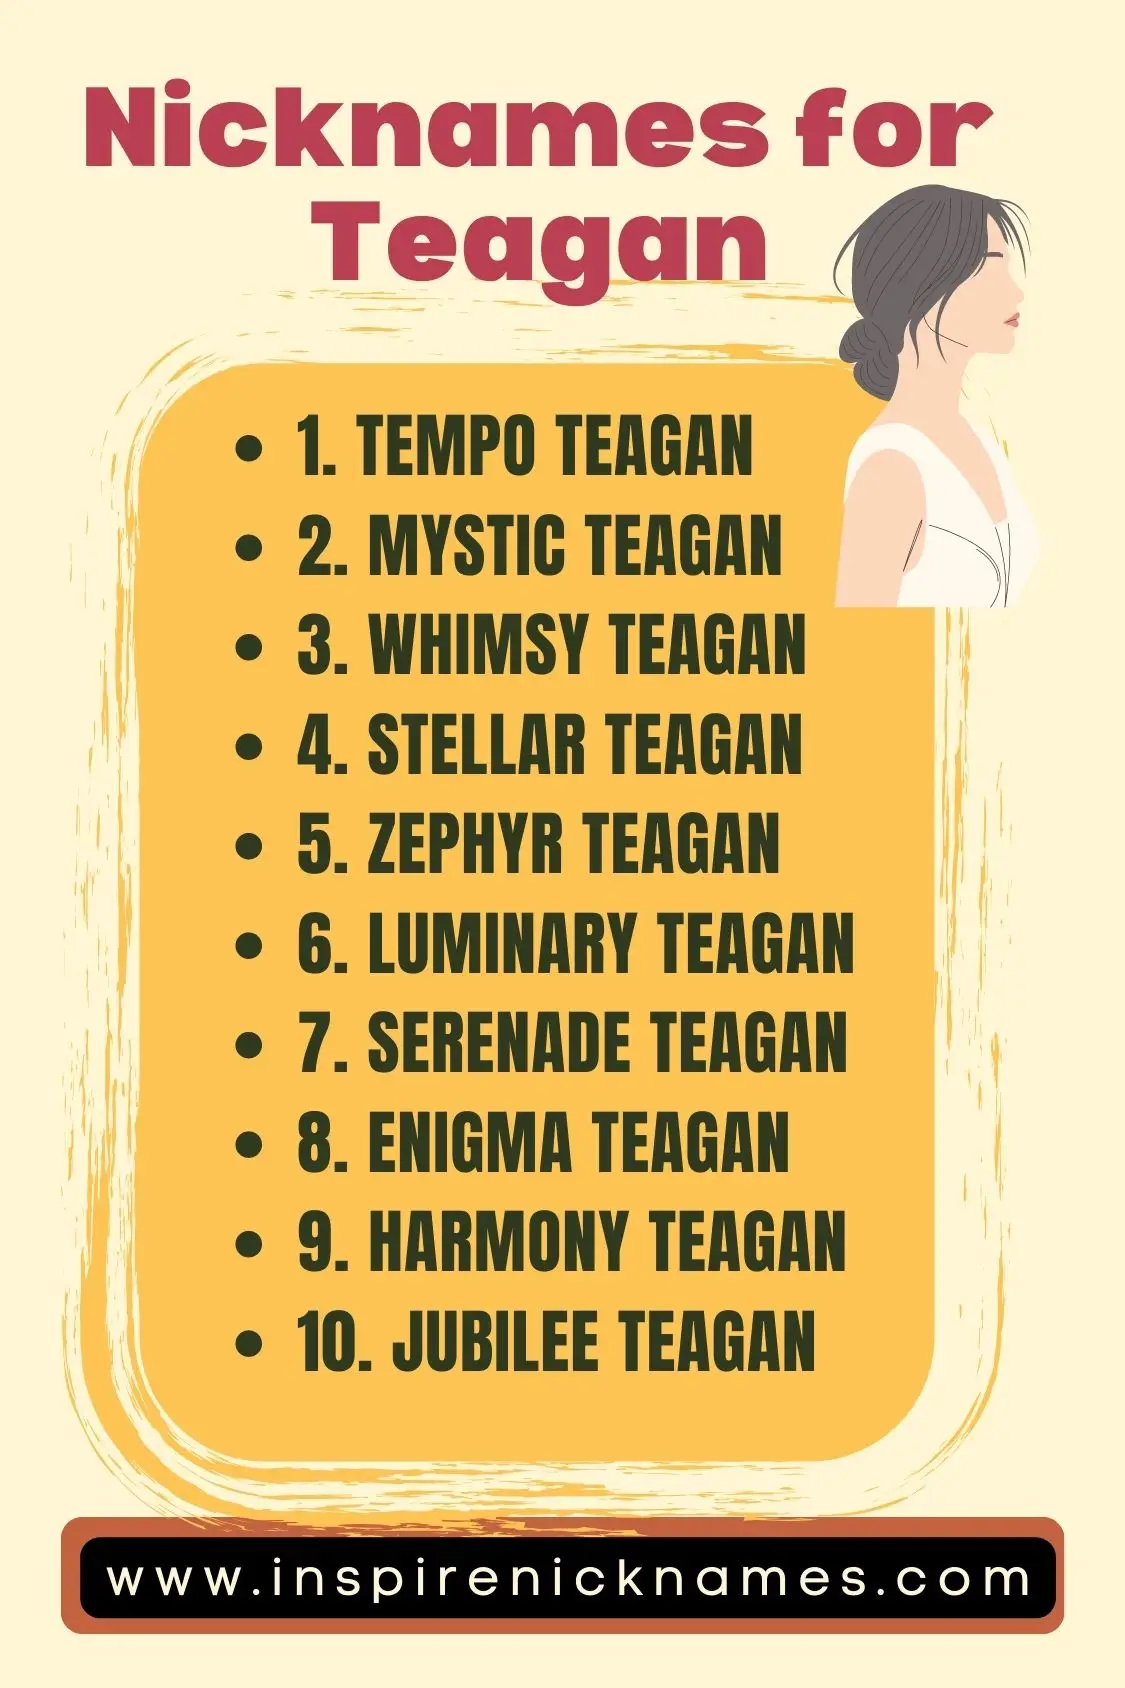 nicknames for teagan list ideas